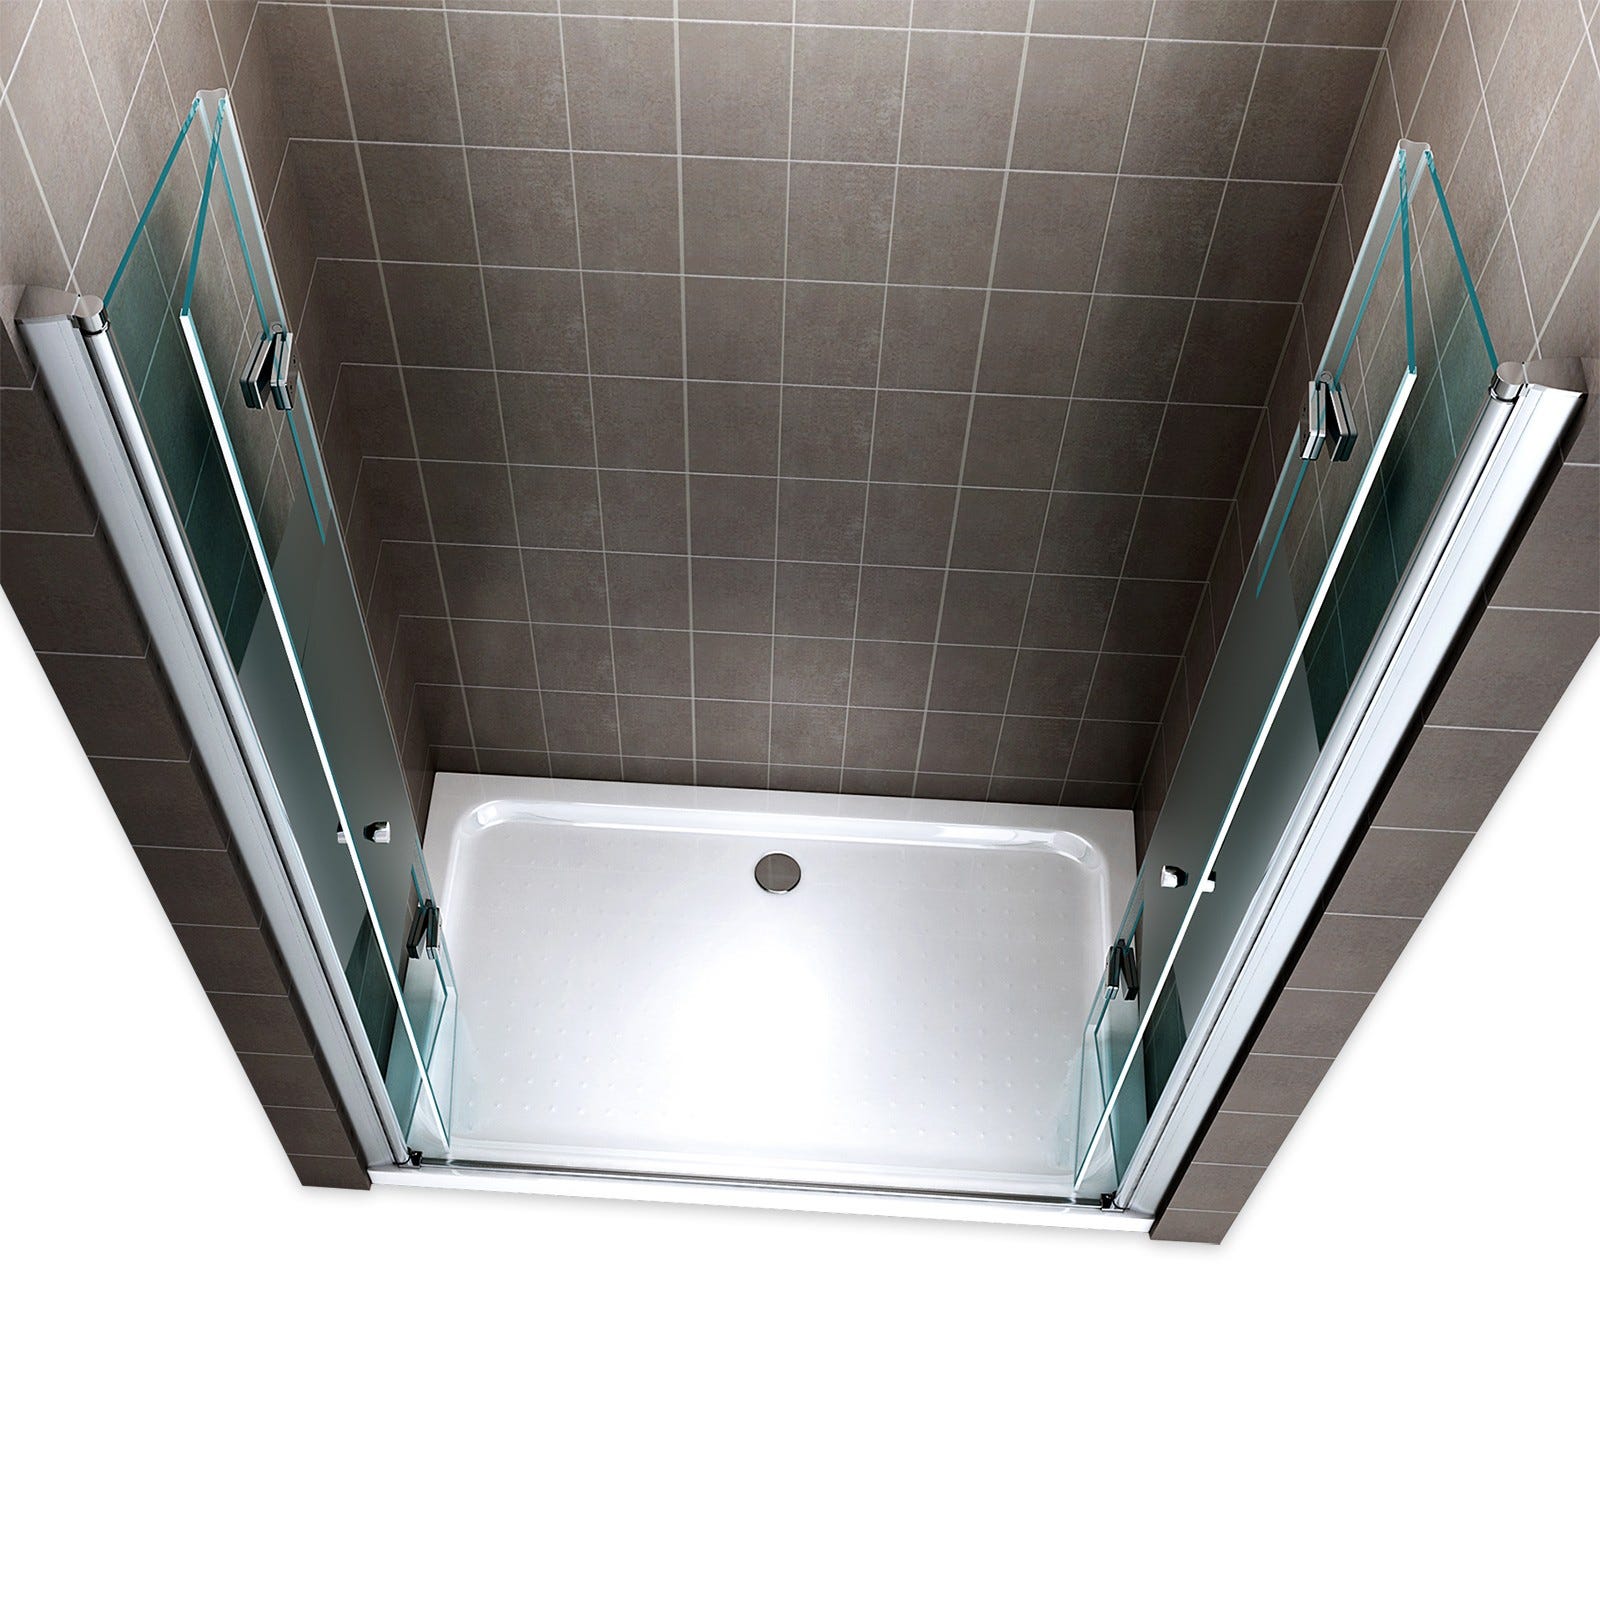 EMMY Porte de douche pliante pivotante H 195 cm largeur réglable 68 à 72 cm verre semi-opaque 2